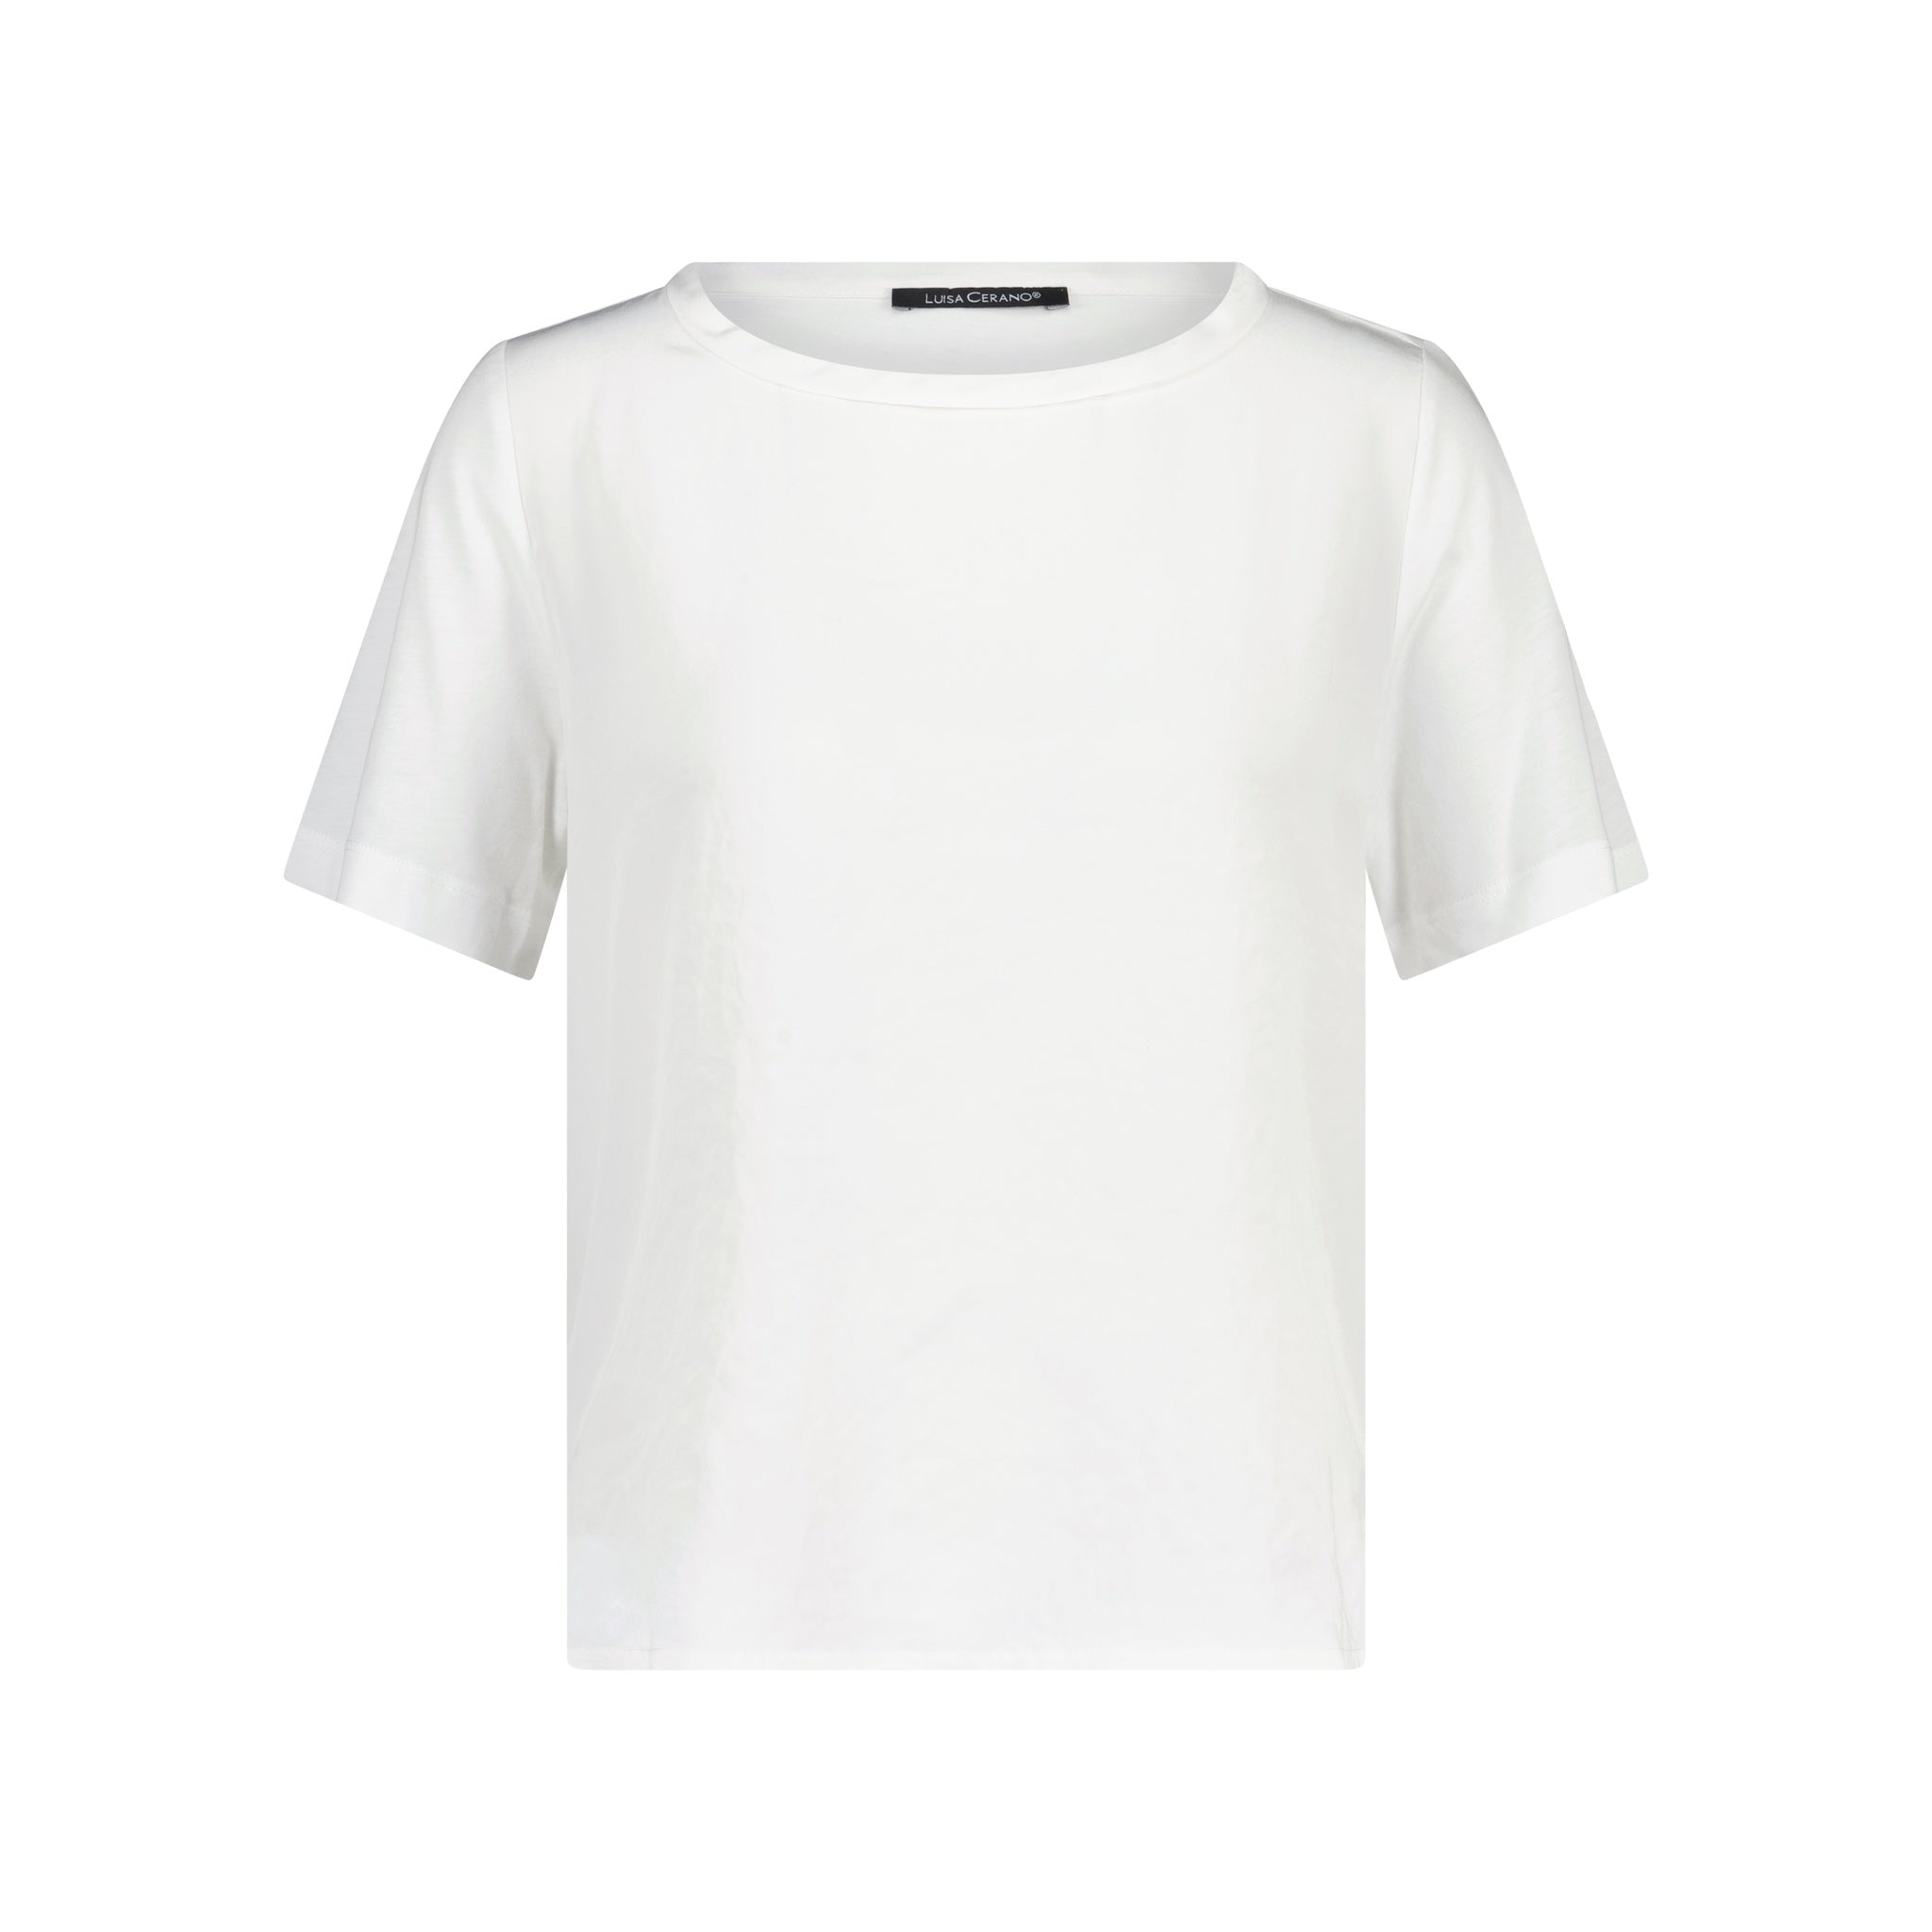 T-Shirt im Materialmix